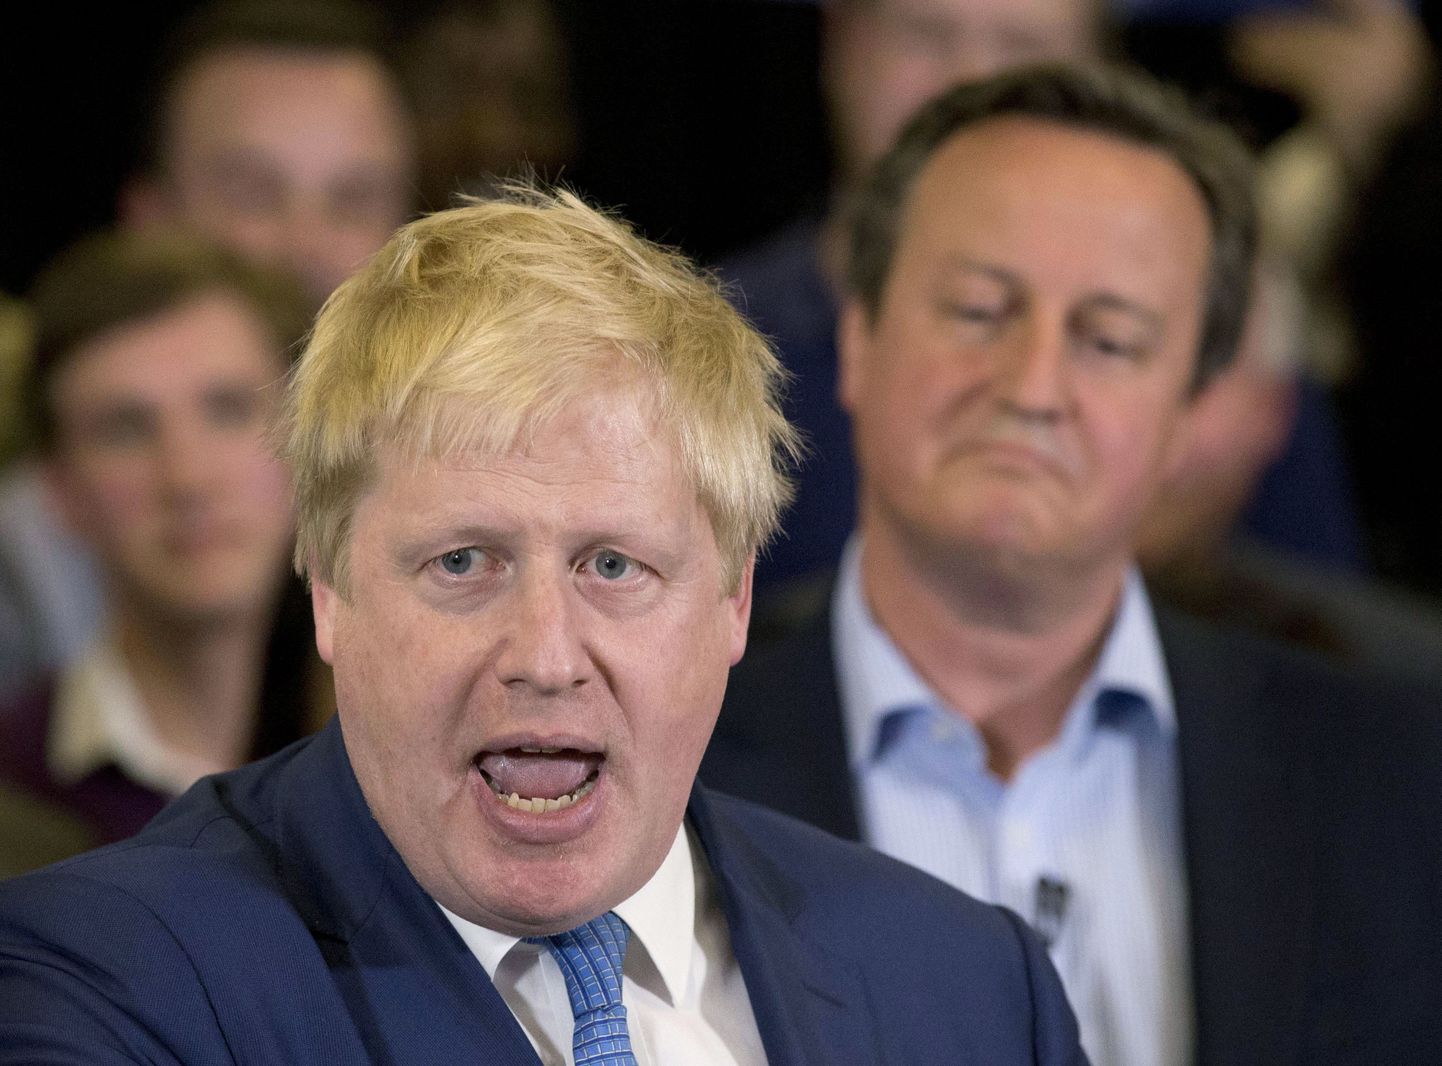 Londoni endine linnapea ja lahkumiskampaania eestvedaja Boris Johnson (vasakul) ja Suurbritannia peaminister ning jäämise kampaania liider David Cameron